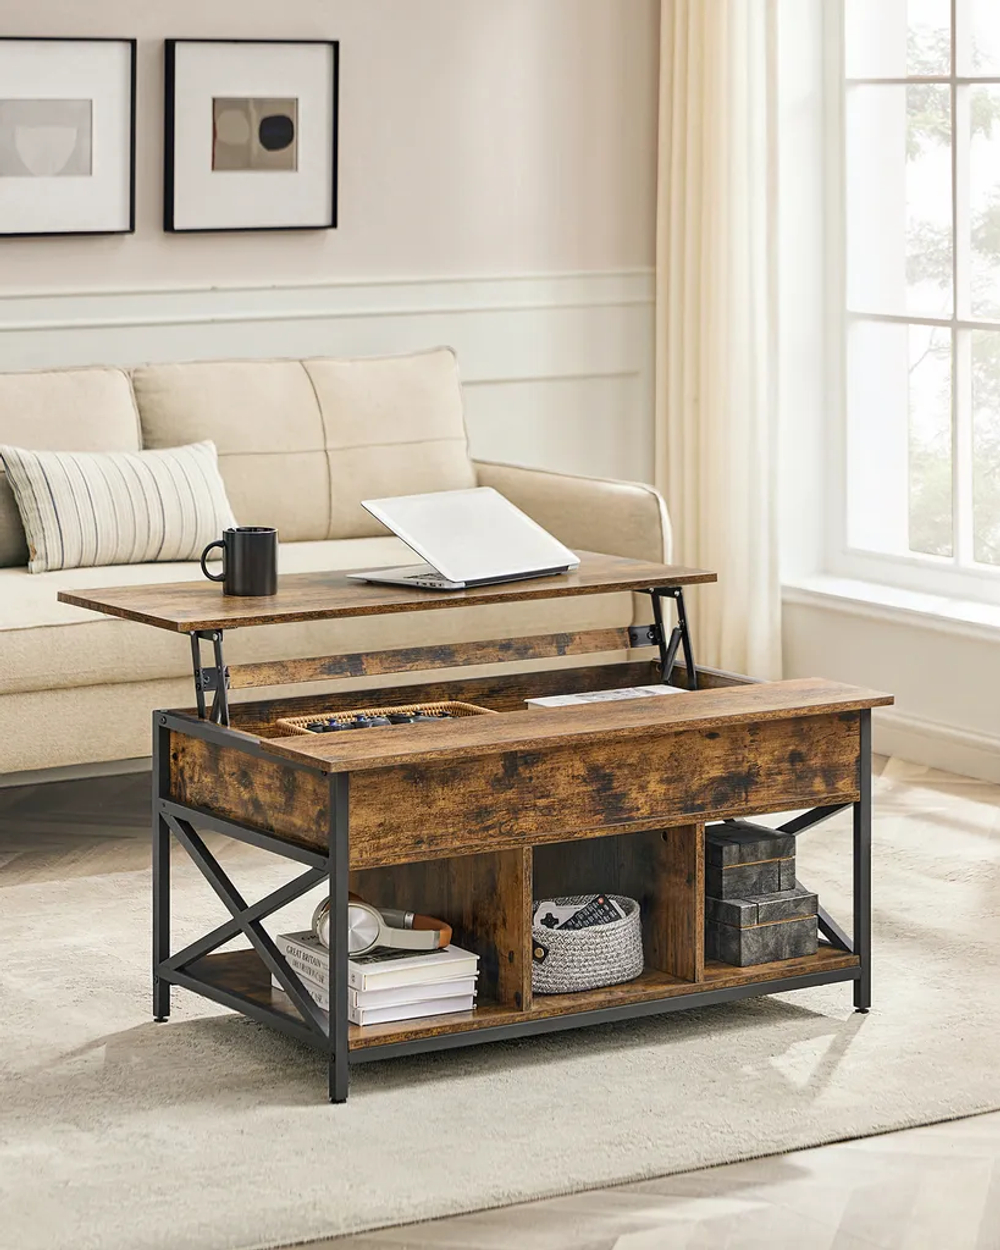 Журнальный столик трансформер VASAGLE LCT205B01V1 с регулируемой высотой, кофейный стол, открытое и скрытое хранение.